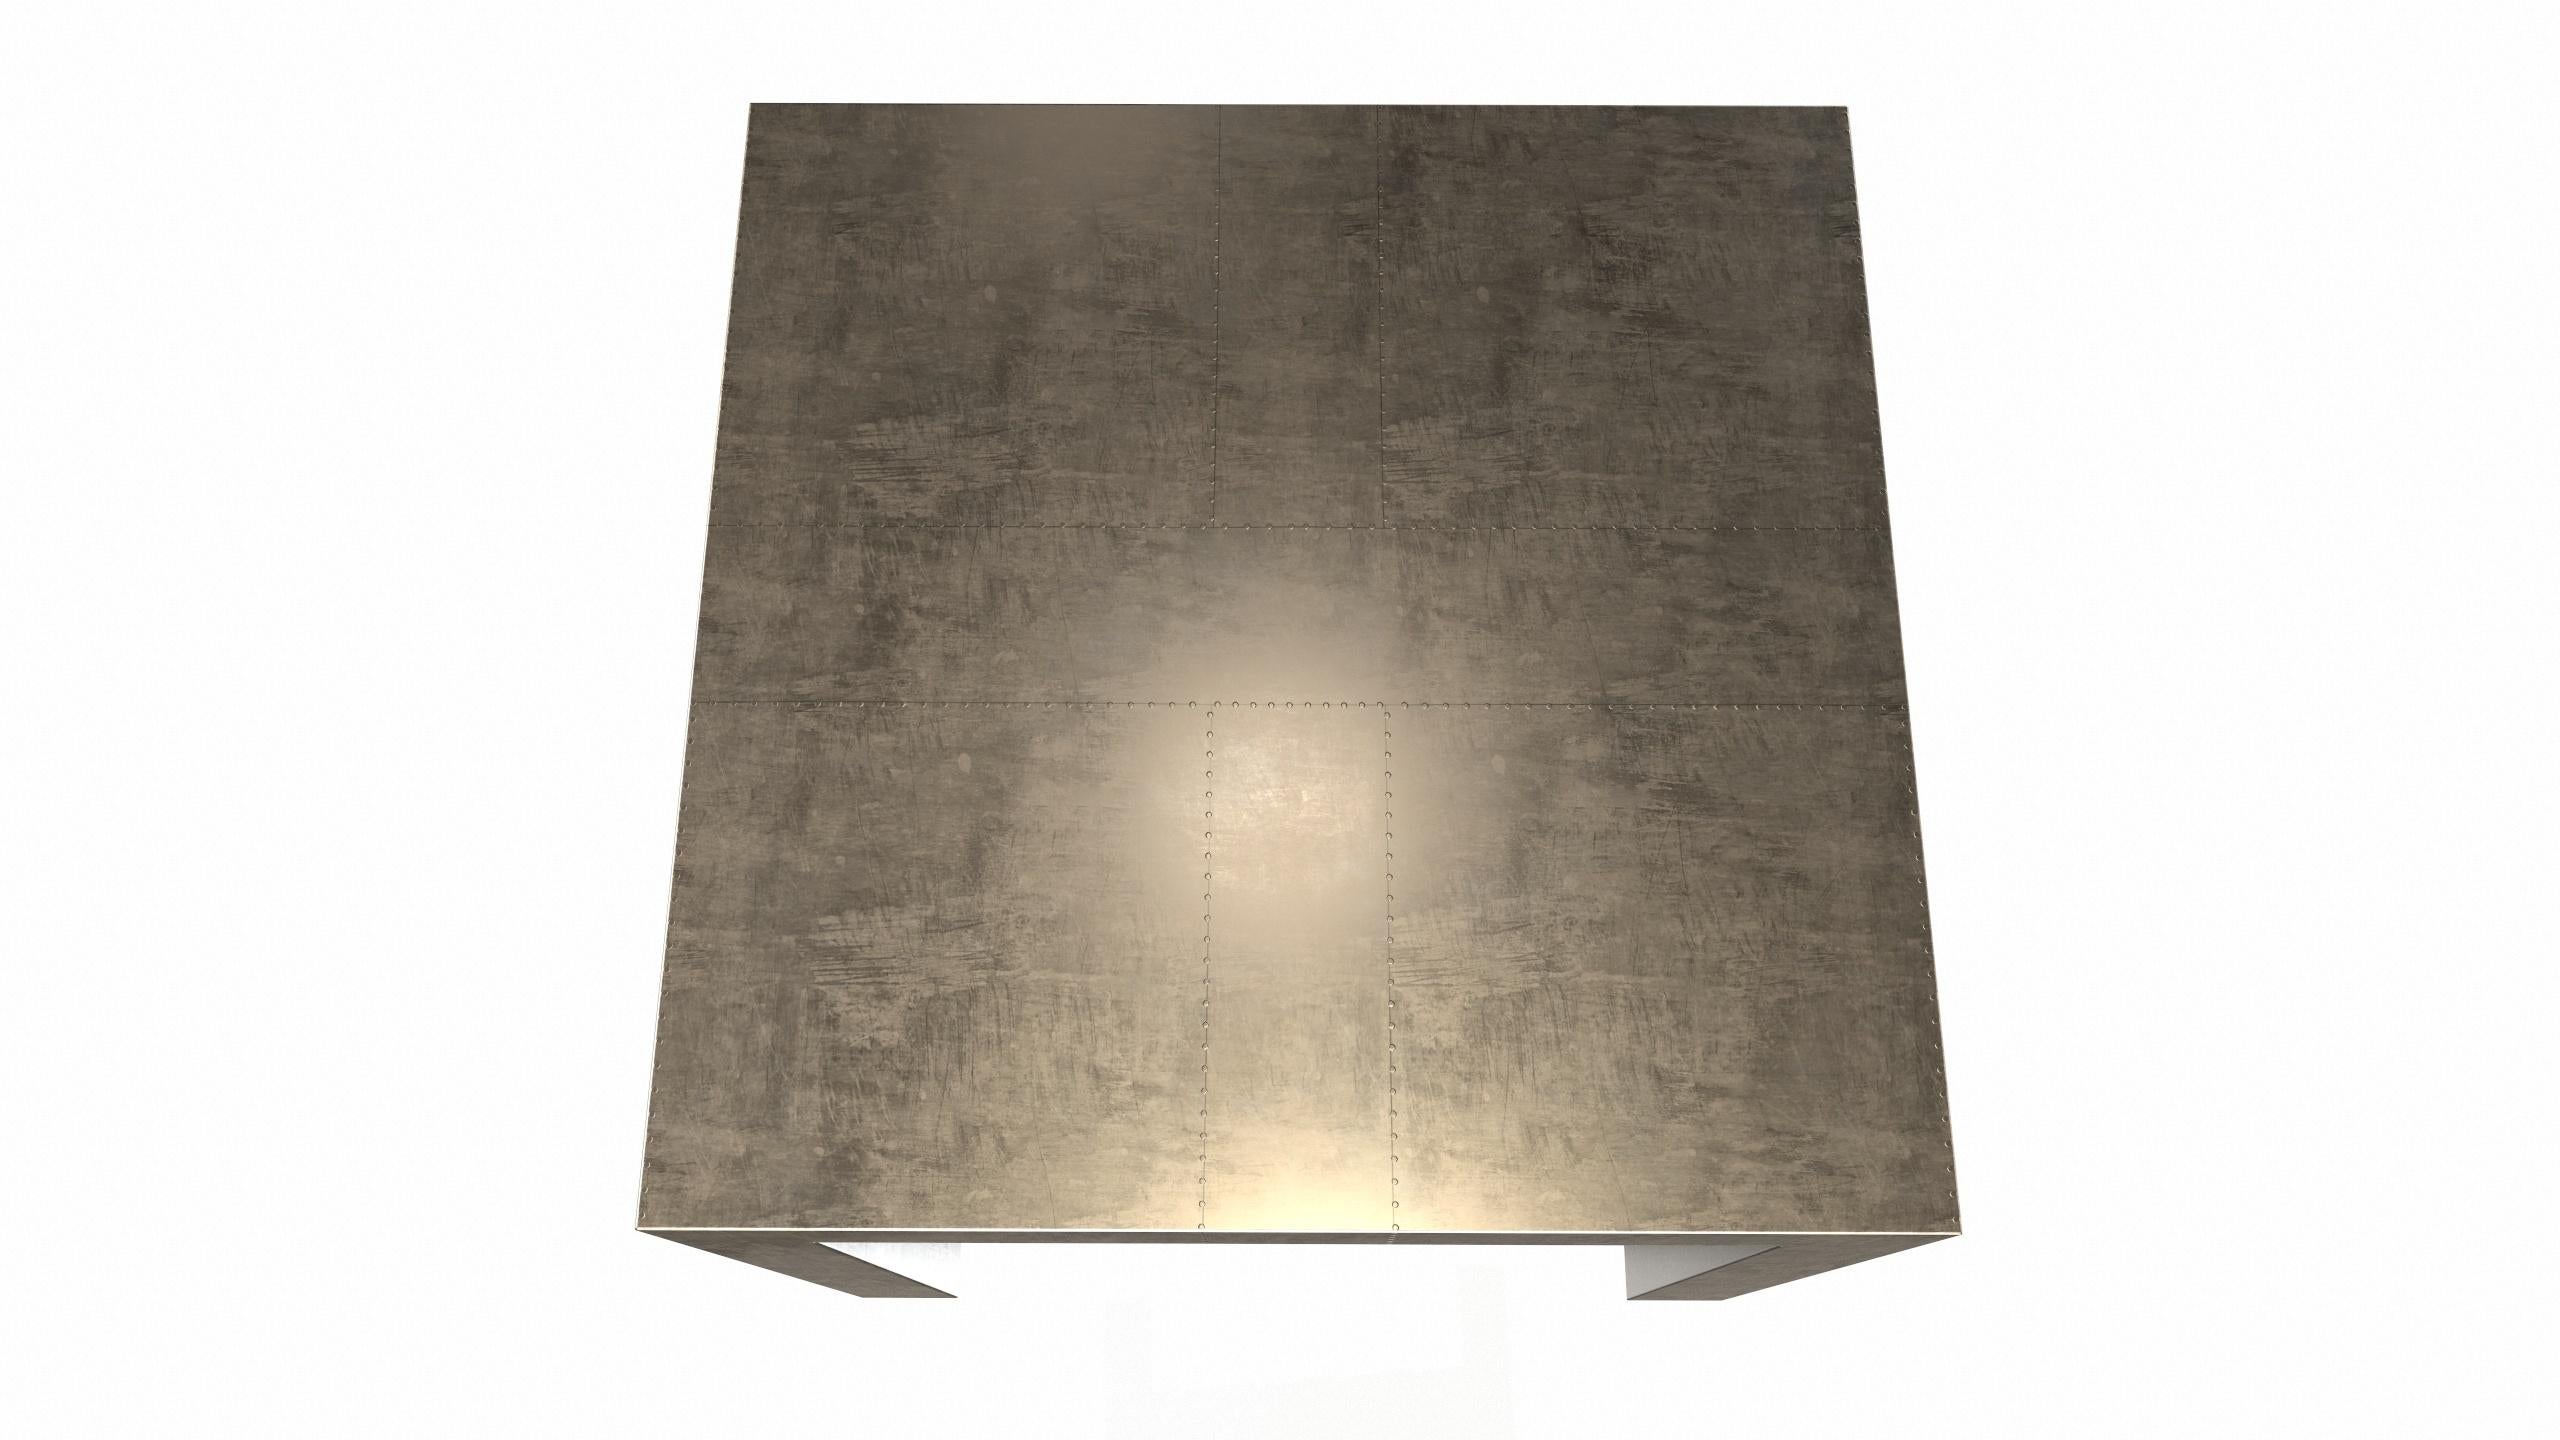 Alison Spear entwarf diesen eleganten und minimalistischen Tisch für Stephanie Odegard während ihrer gemeinsamen Reise nach Rajasthan, Indien. Die Handwerker schaffen mit verschiedenen Hämmerungen Muster in den mit Teakholz verkleideten